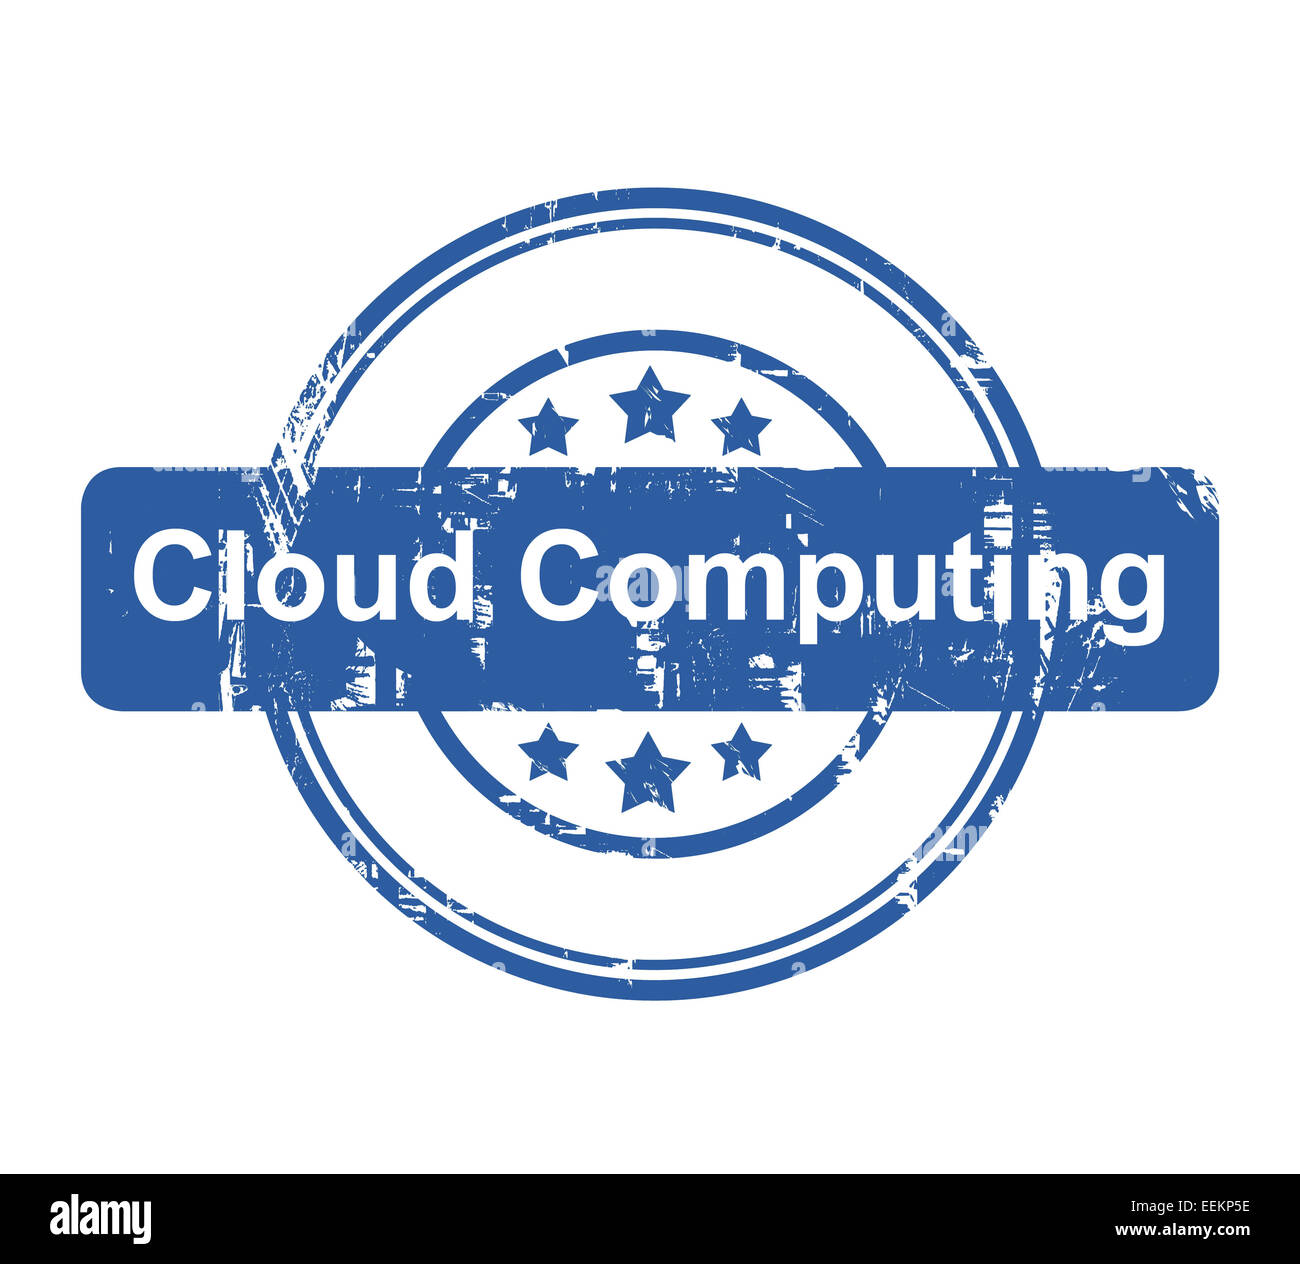 Cloud-Computing-Konzept Firmenstempel mit Sternen isoliert auf einem weißen Hintergrund. Stockfoto